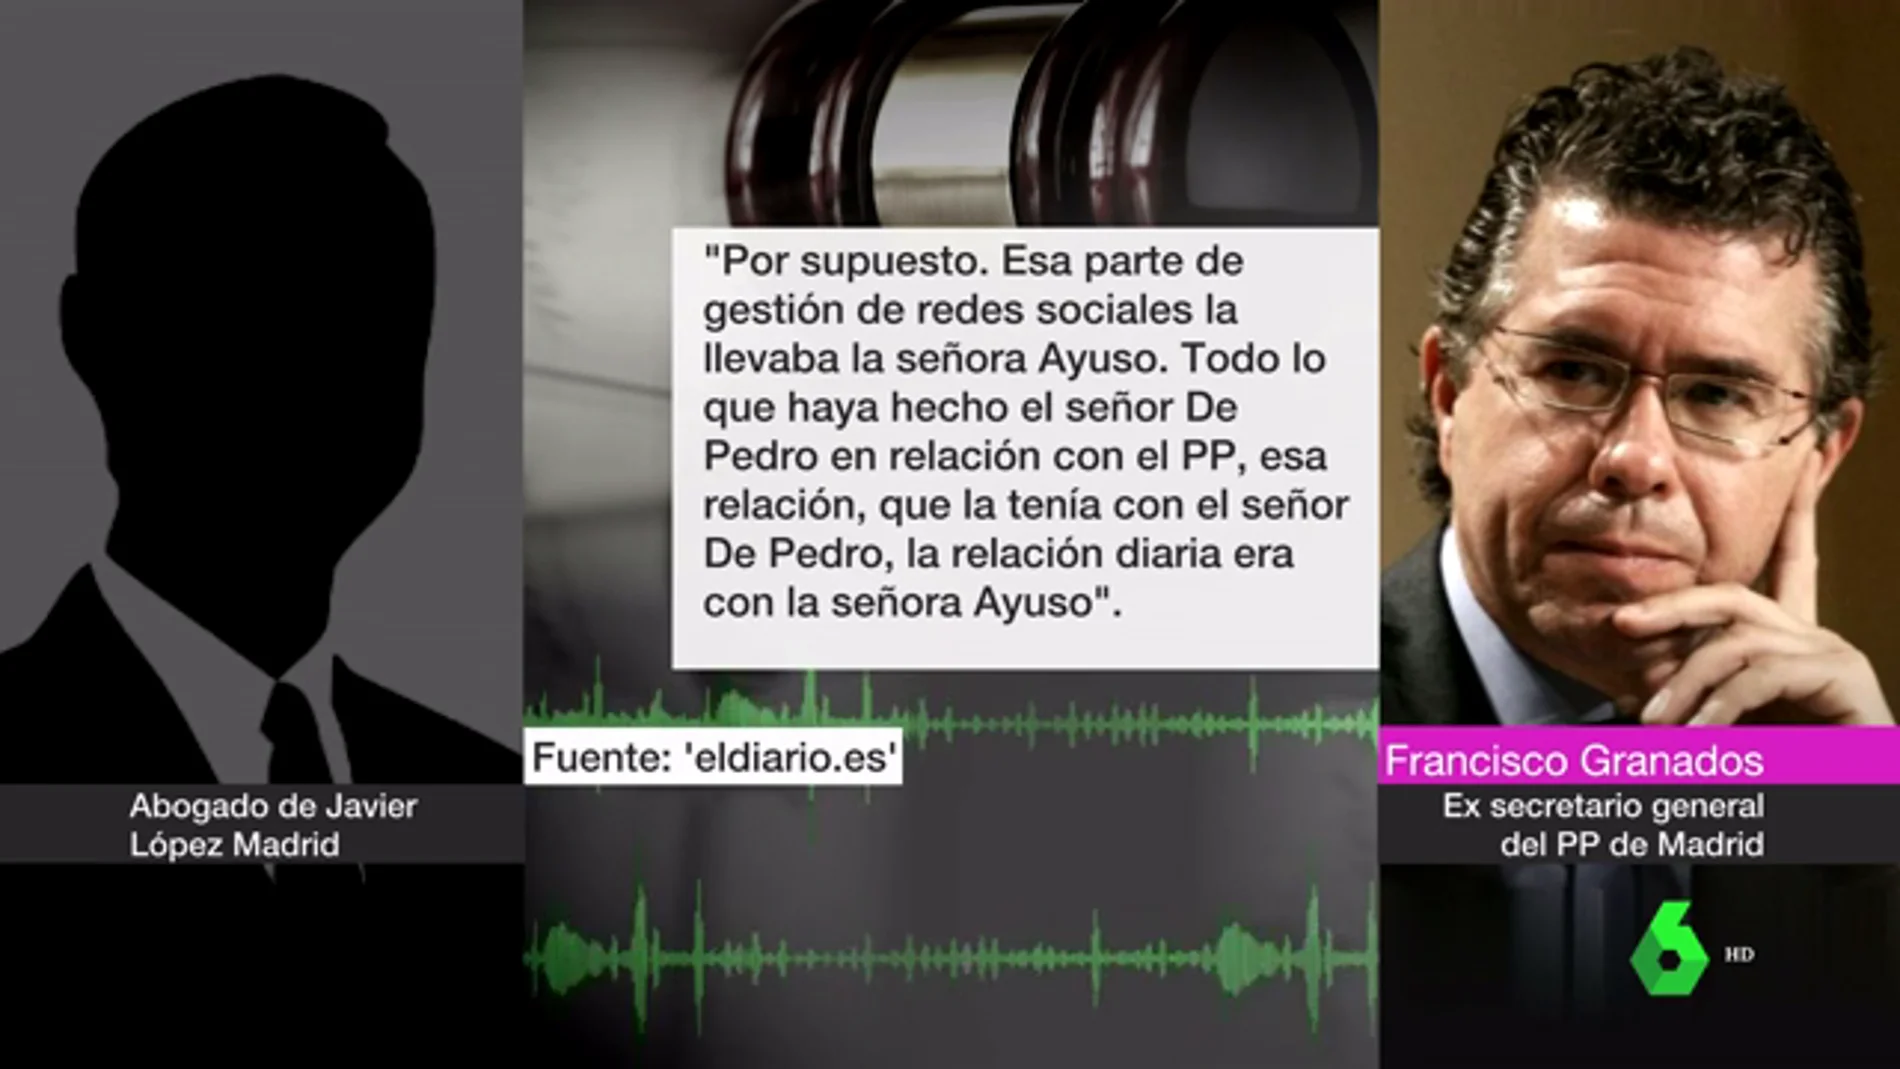 Granados reaparece para exculpar a Díaz Ayuso en la trama Púnica: "No decidía nada de nada"